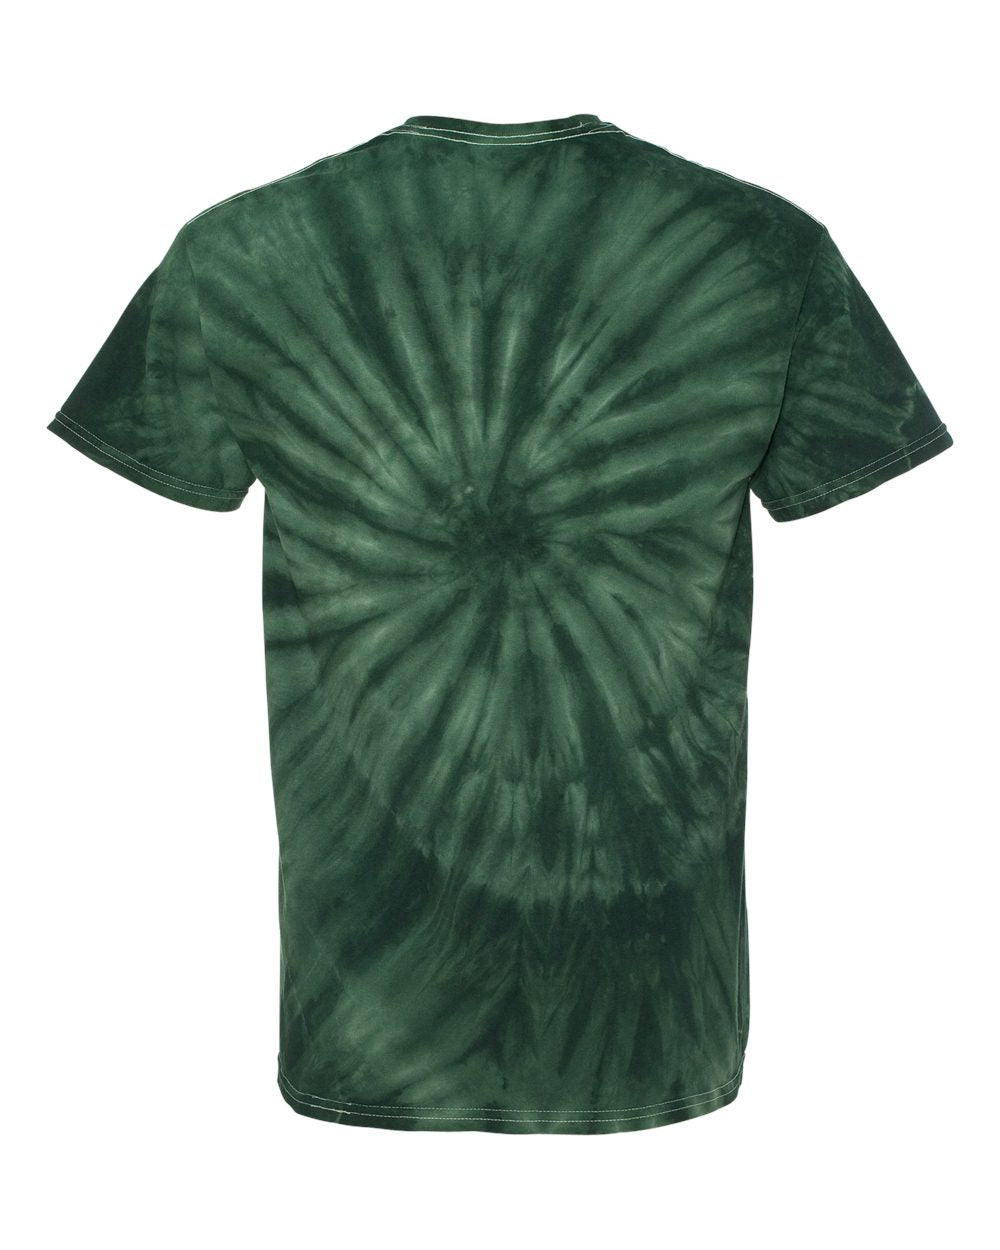 Espiral Dye - Verde